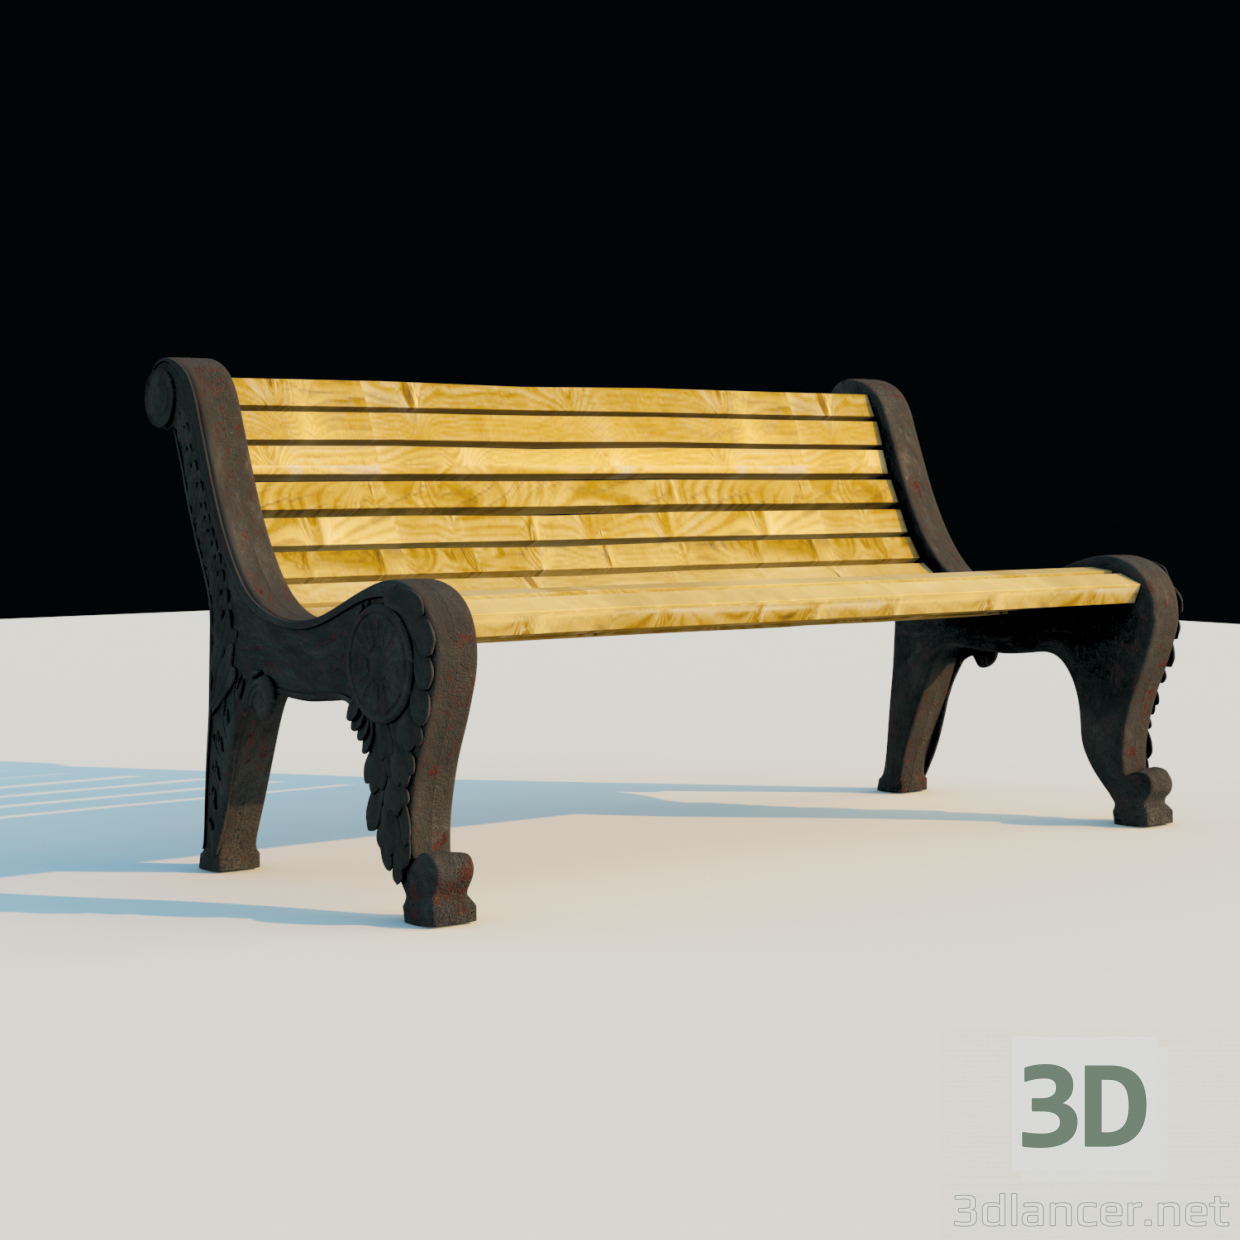 Sitzbank 3D-Modell kaufen - Rendern